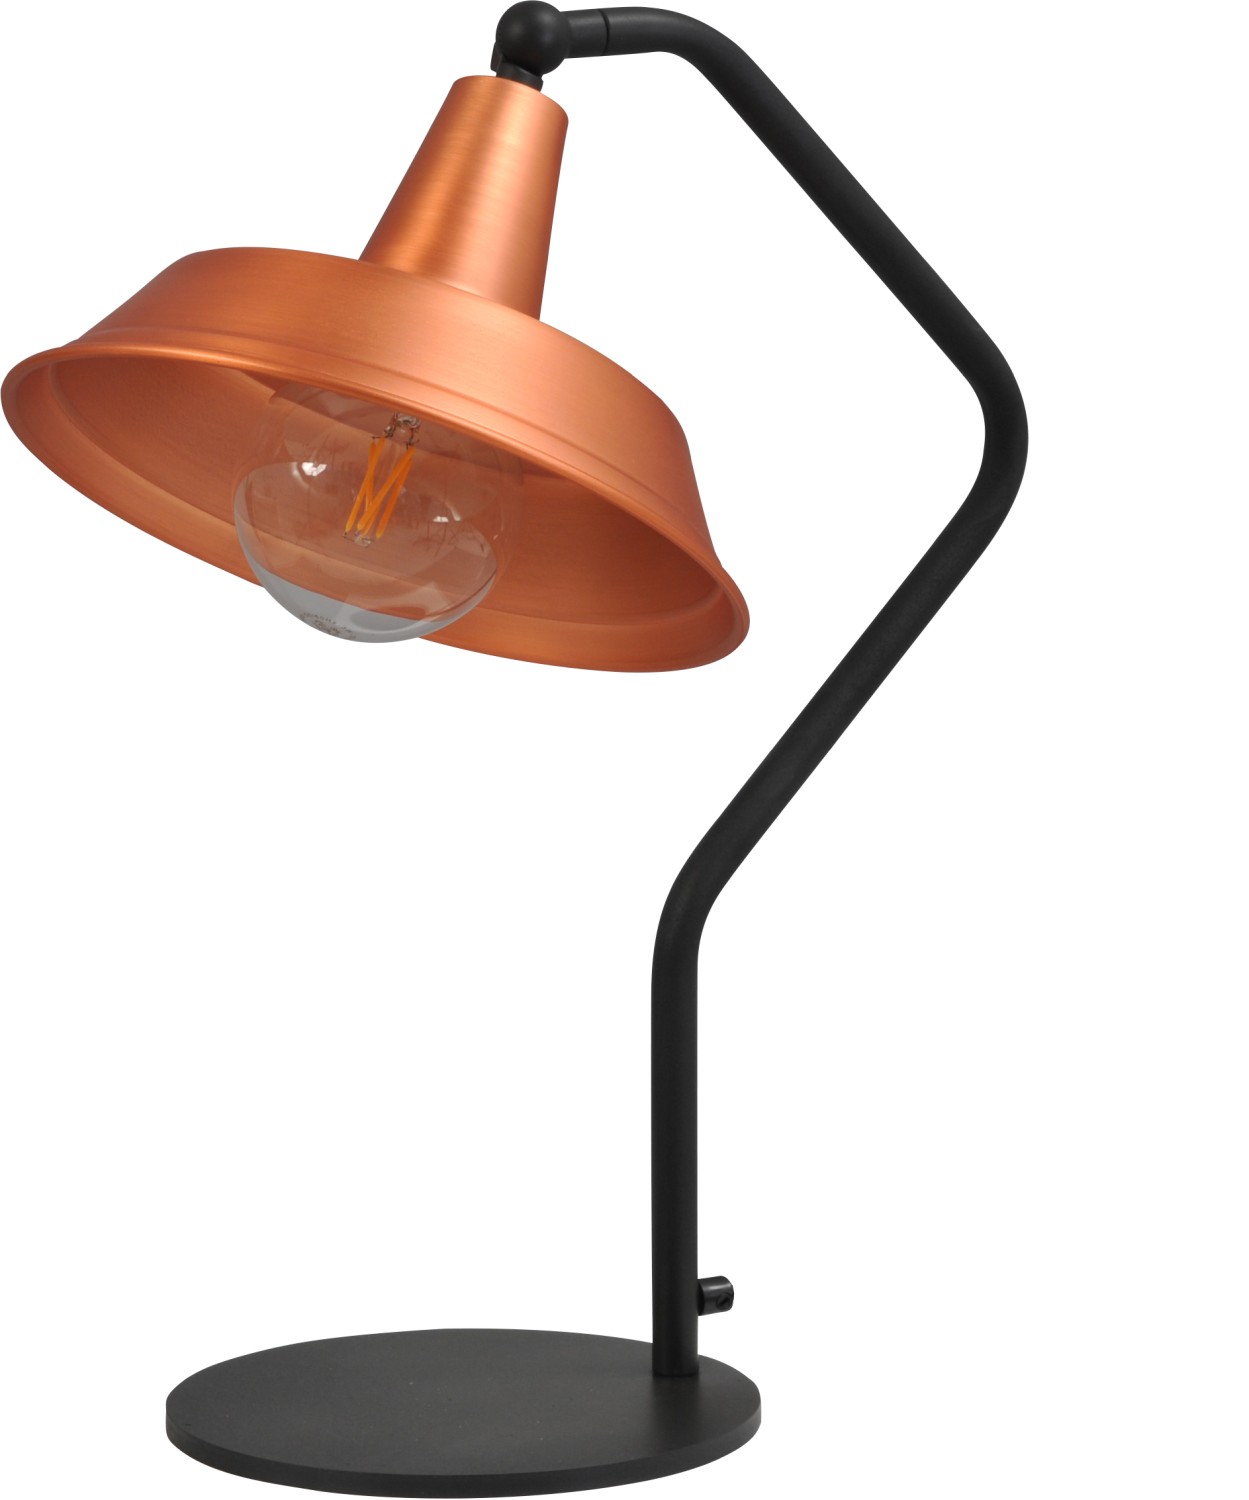 Tischlampe in Kupfer Industriestil Schirm ∅25cm